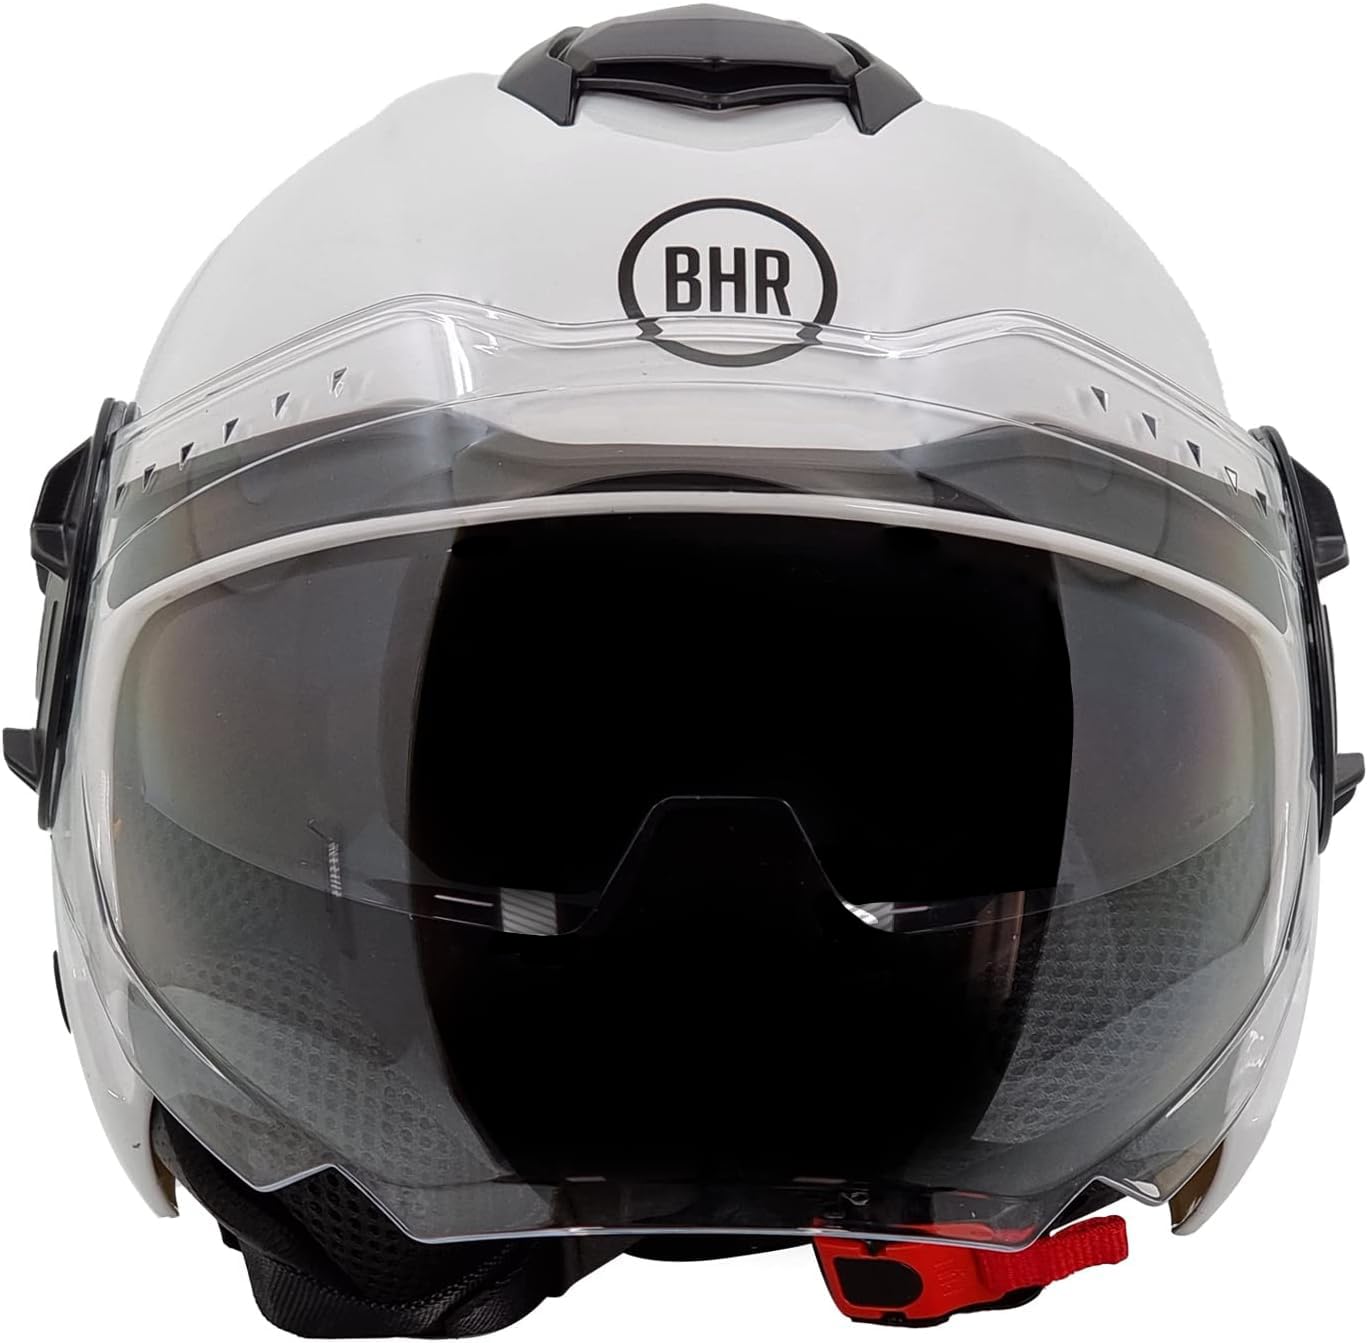 BHR Jet Helm Double Visor 830 FLASH, Scooter Helm mit ECE 22.06 Zulassung, Leichter & komfortabler Jet Helm mit innenliegender Sonnenblende, Weiß, L von BHR